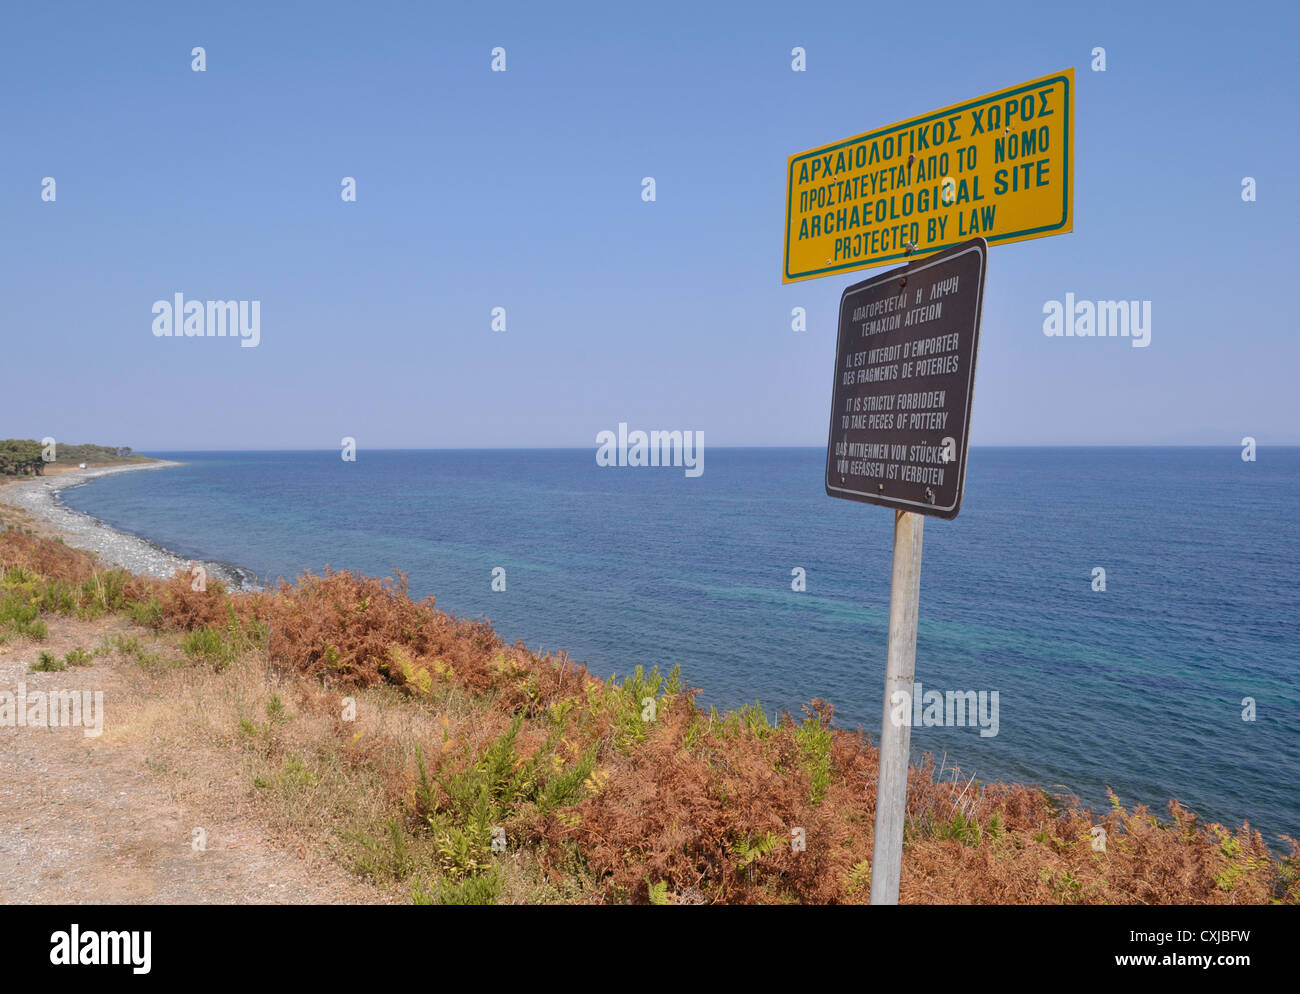 Küste und Wegweiser unter Angabe einer geschützten Website, Insel Samothraki, Griechenland Stockfoto